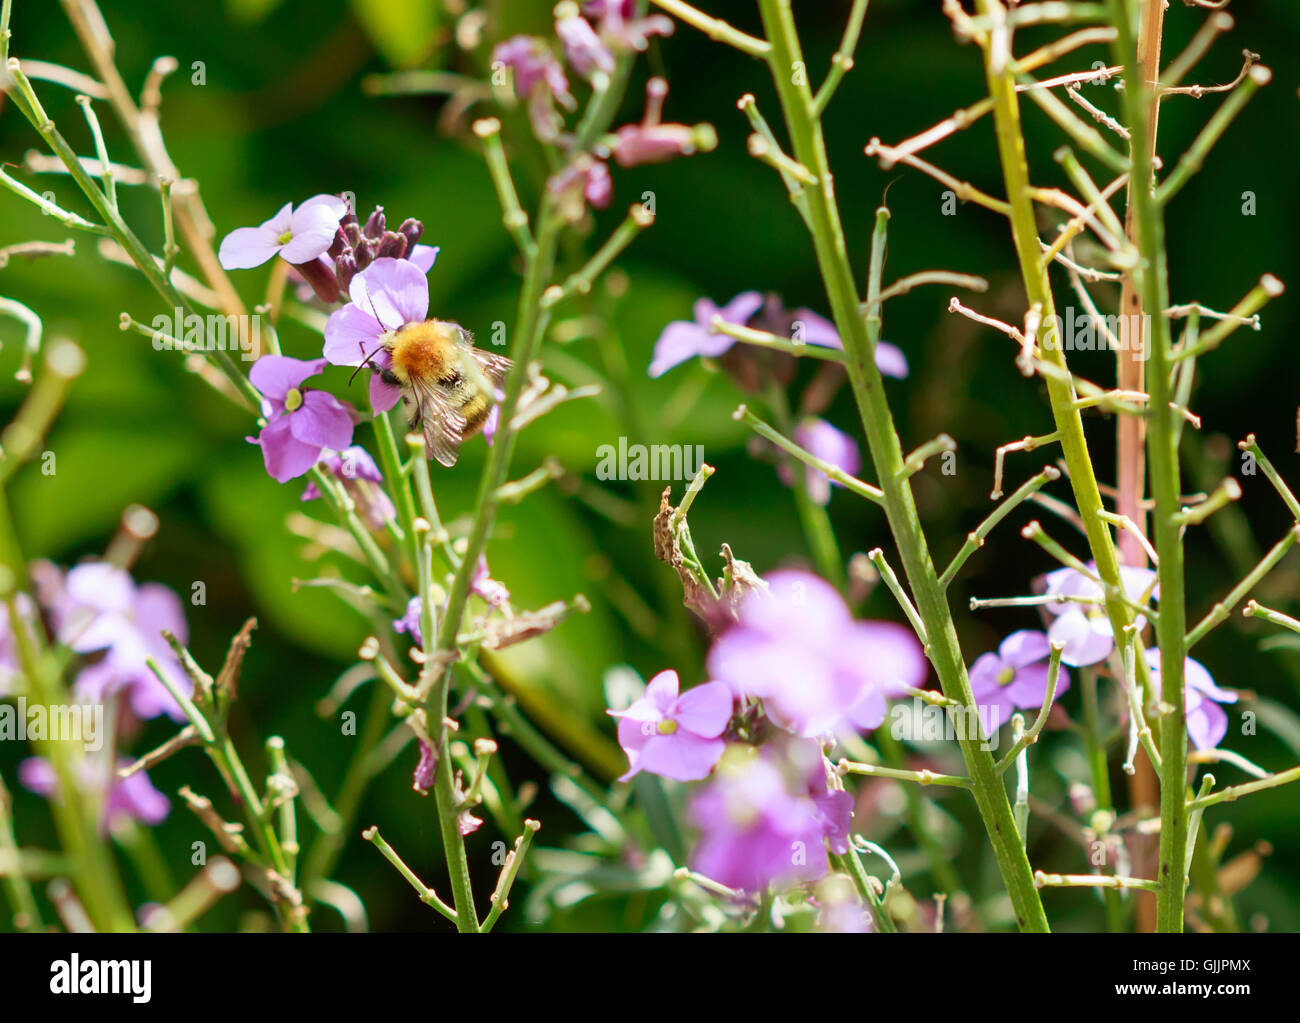 Abeja y flor de cerca la fotografía. Las abejas son insectos voladores estrechamente relacionadas con las avispas y hormigas Foto de stock